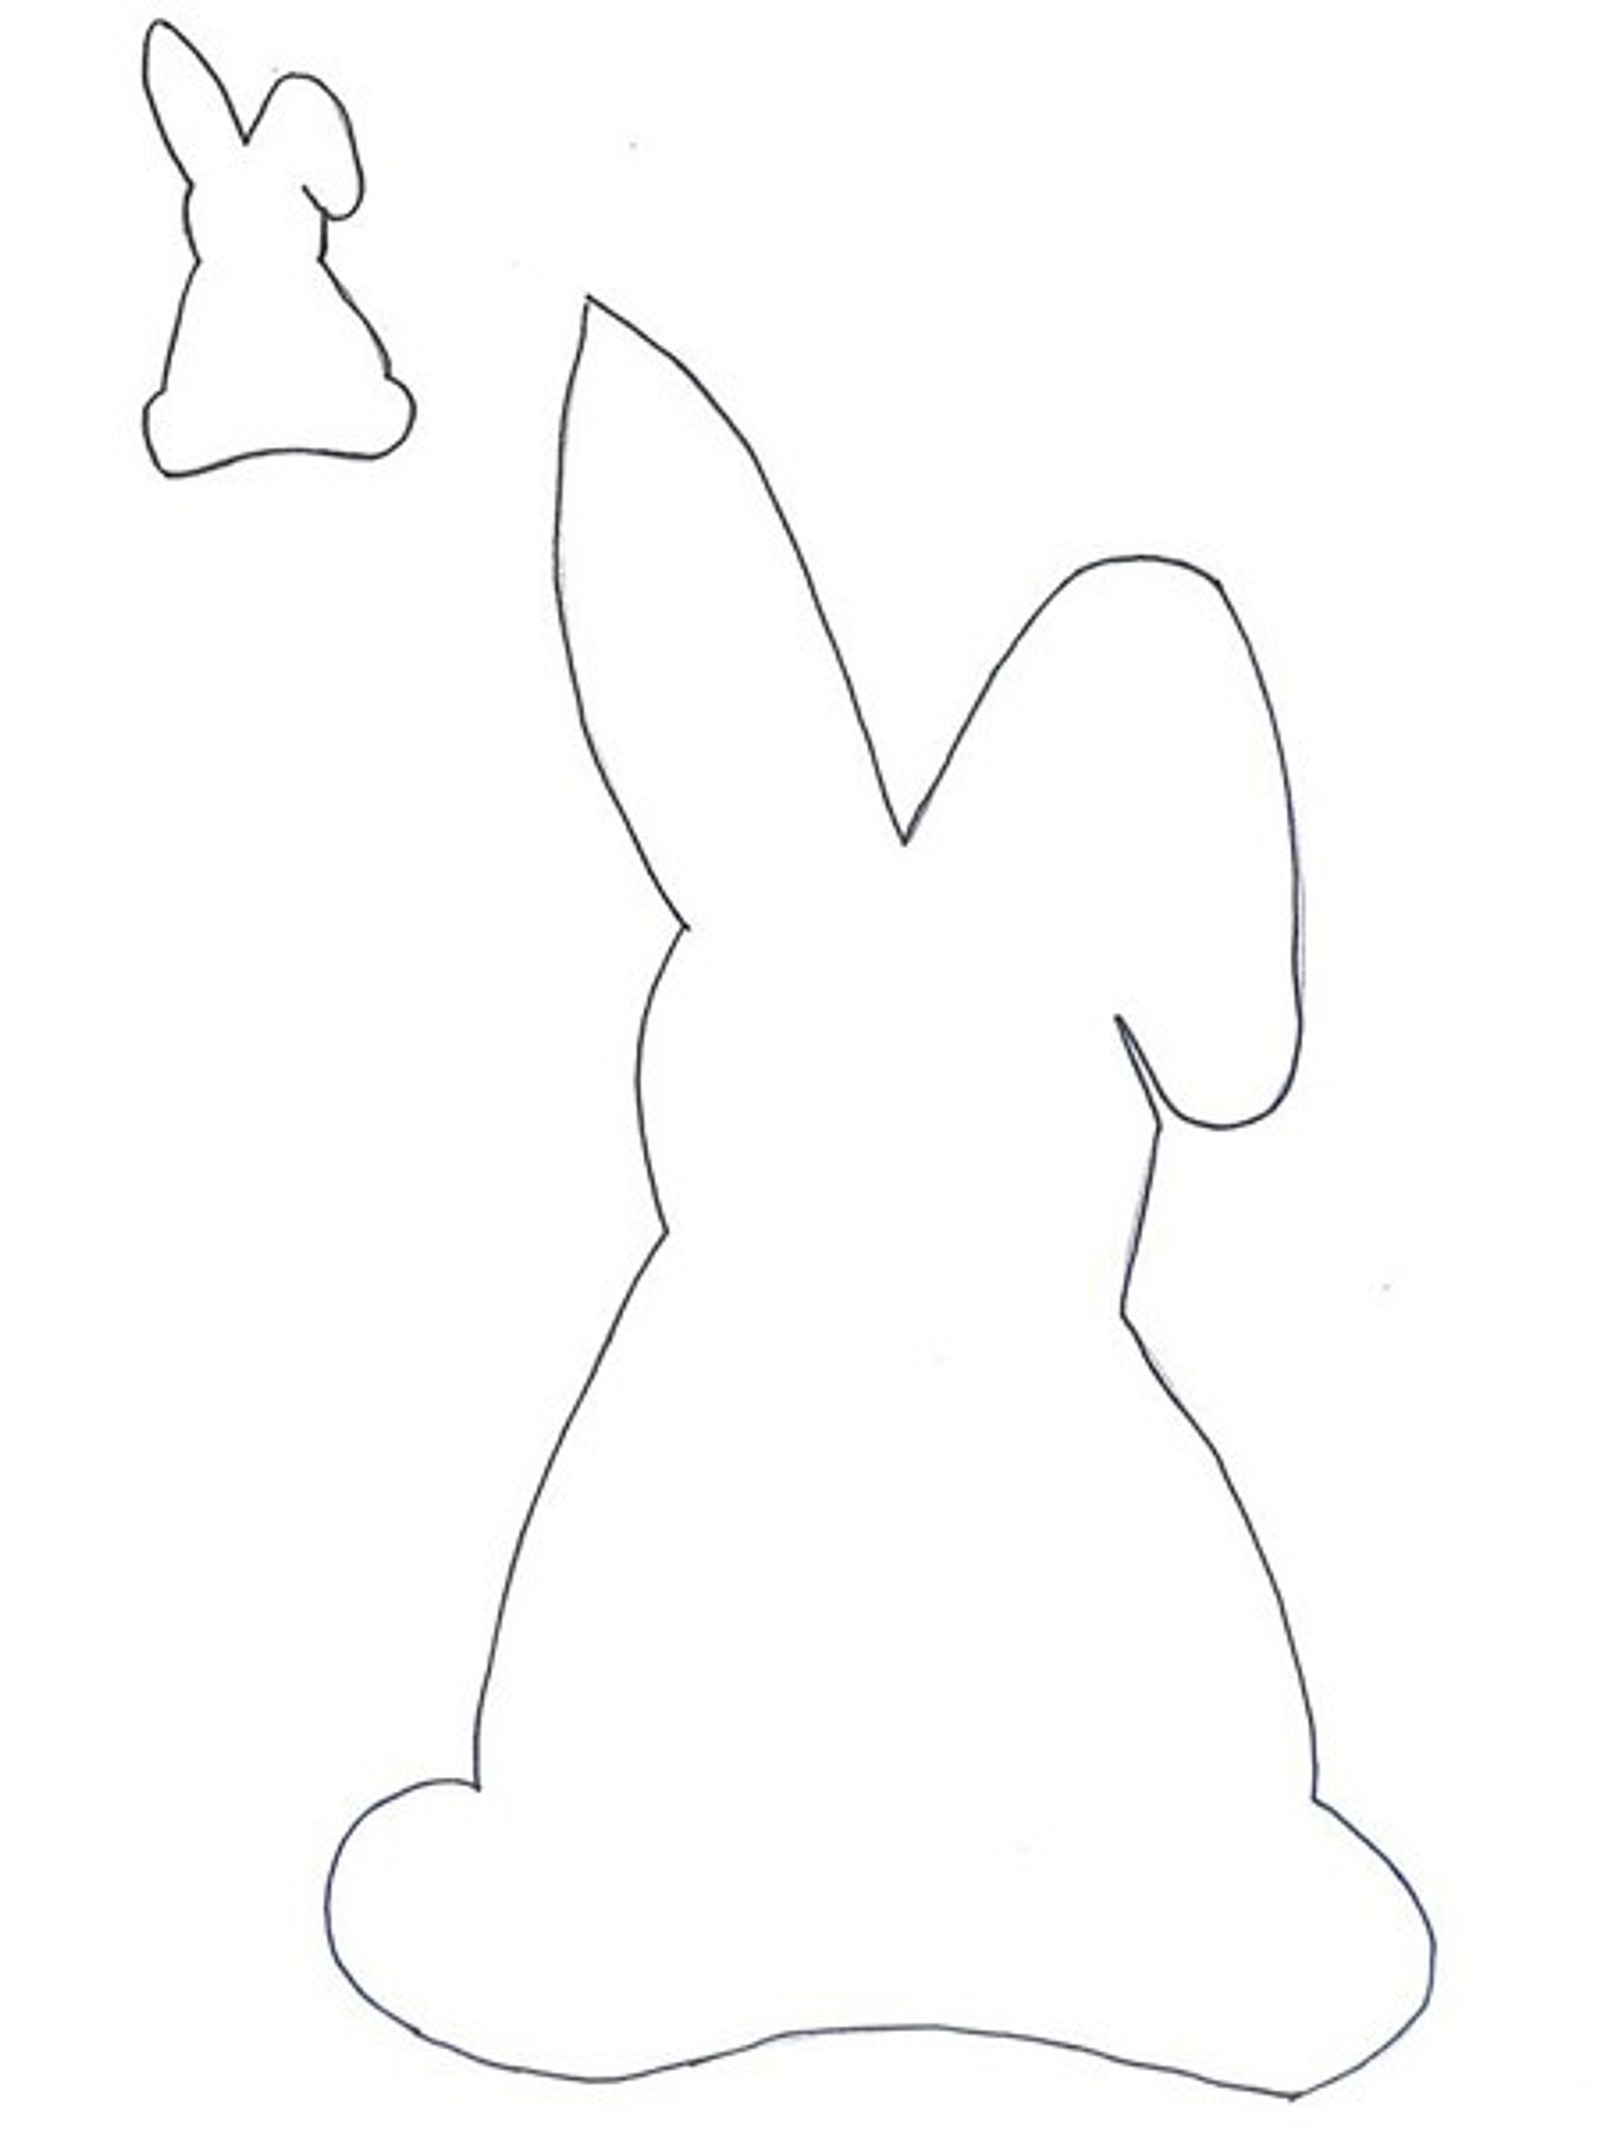 Шаблон пасхального кролика. Лекало пасхального кролика. Трафарет пасхального зайца. Пасхальный зайчик шаблон. Пасхальный кролик трафарет.